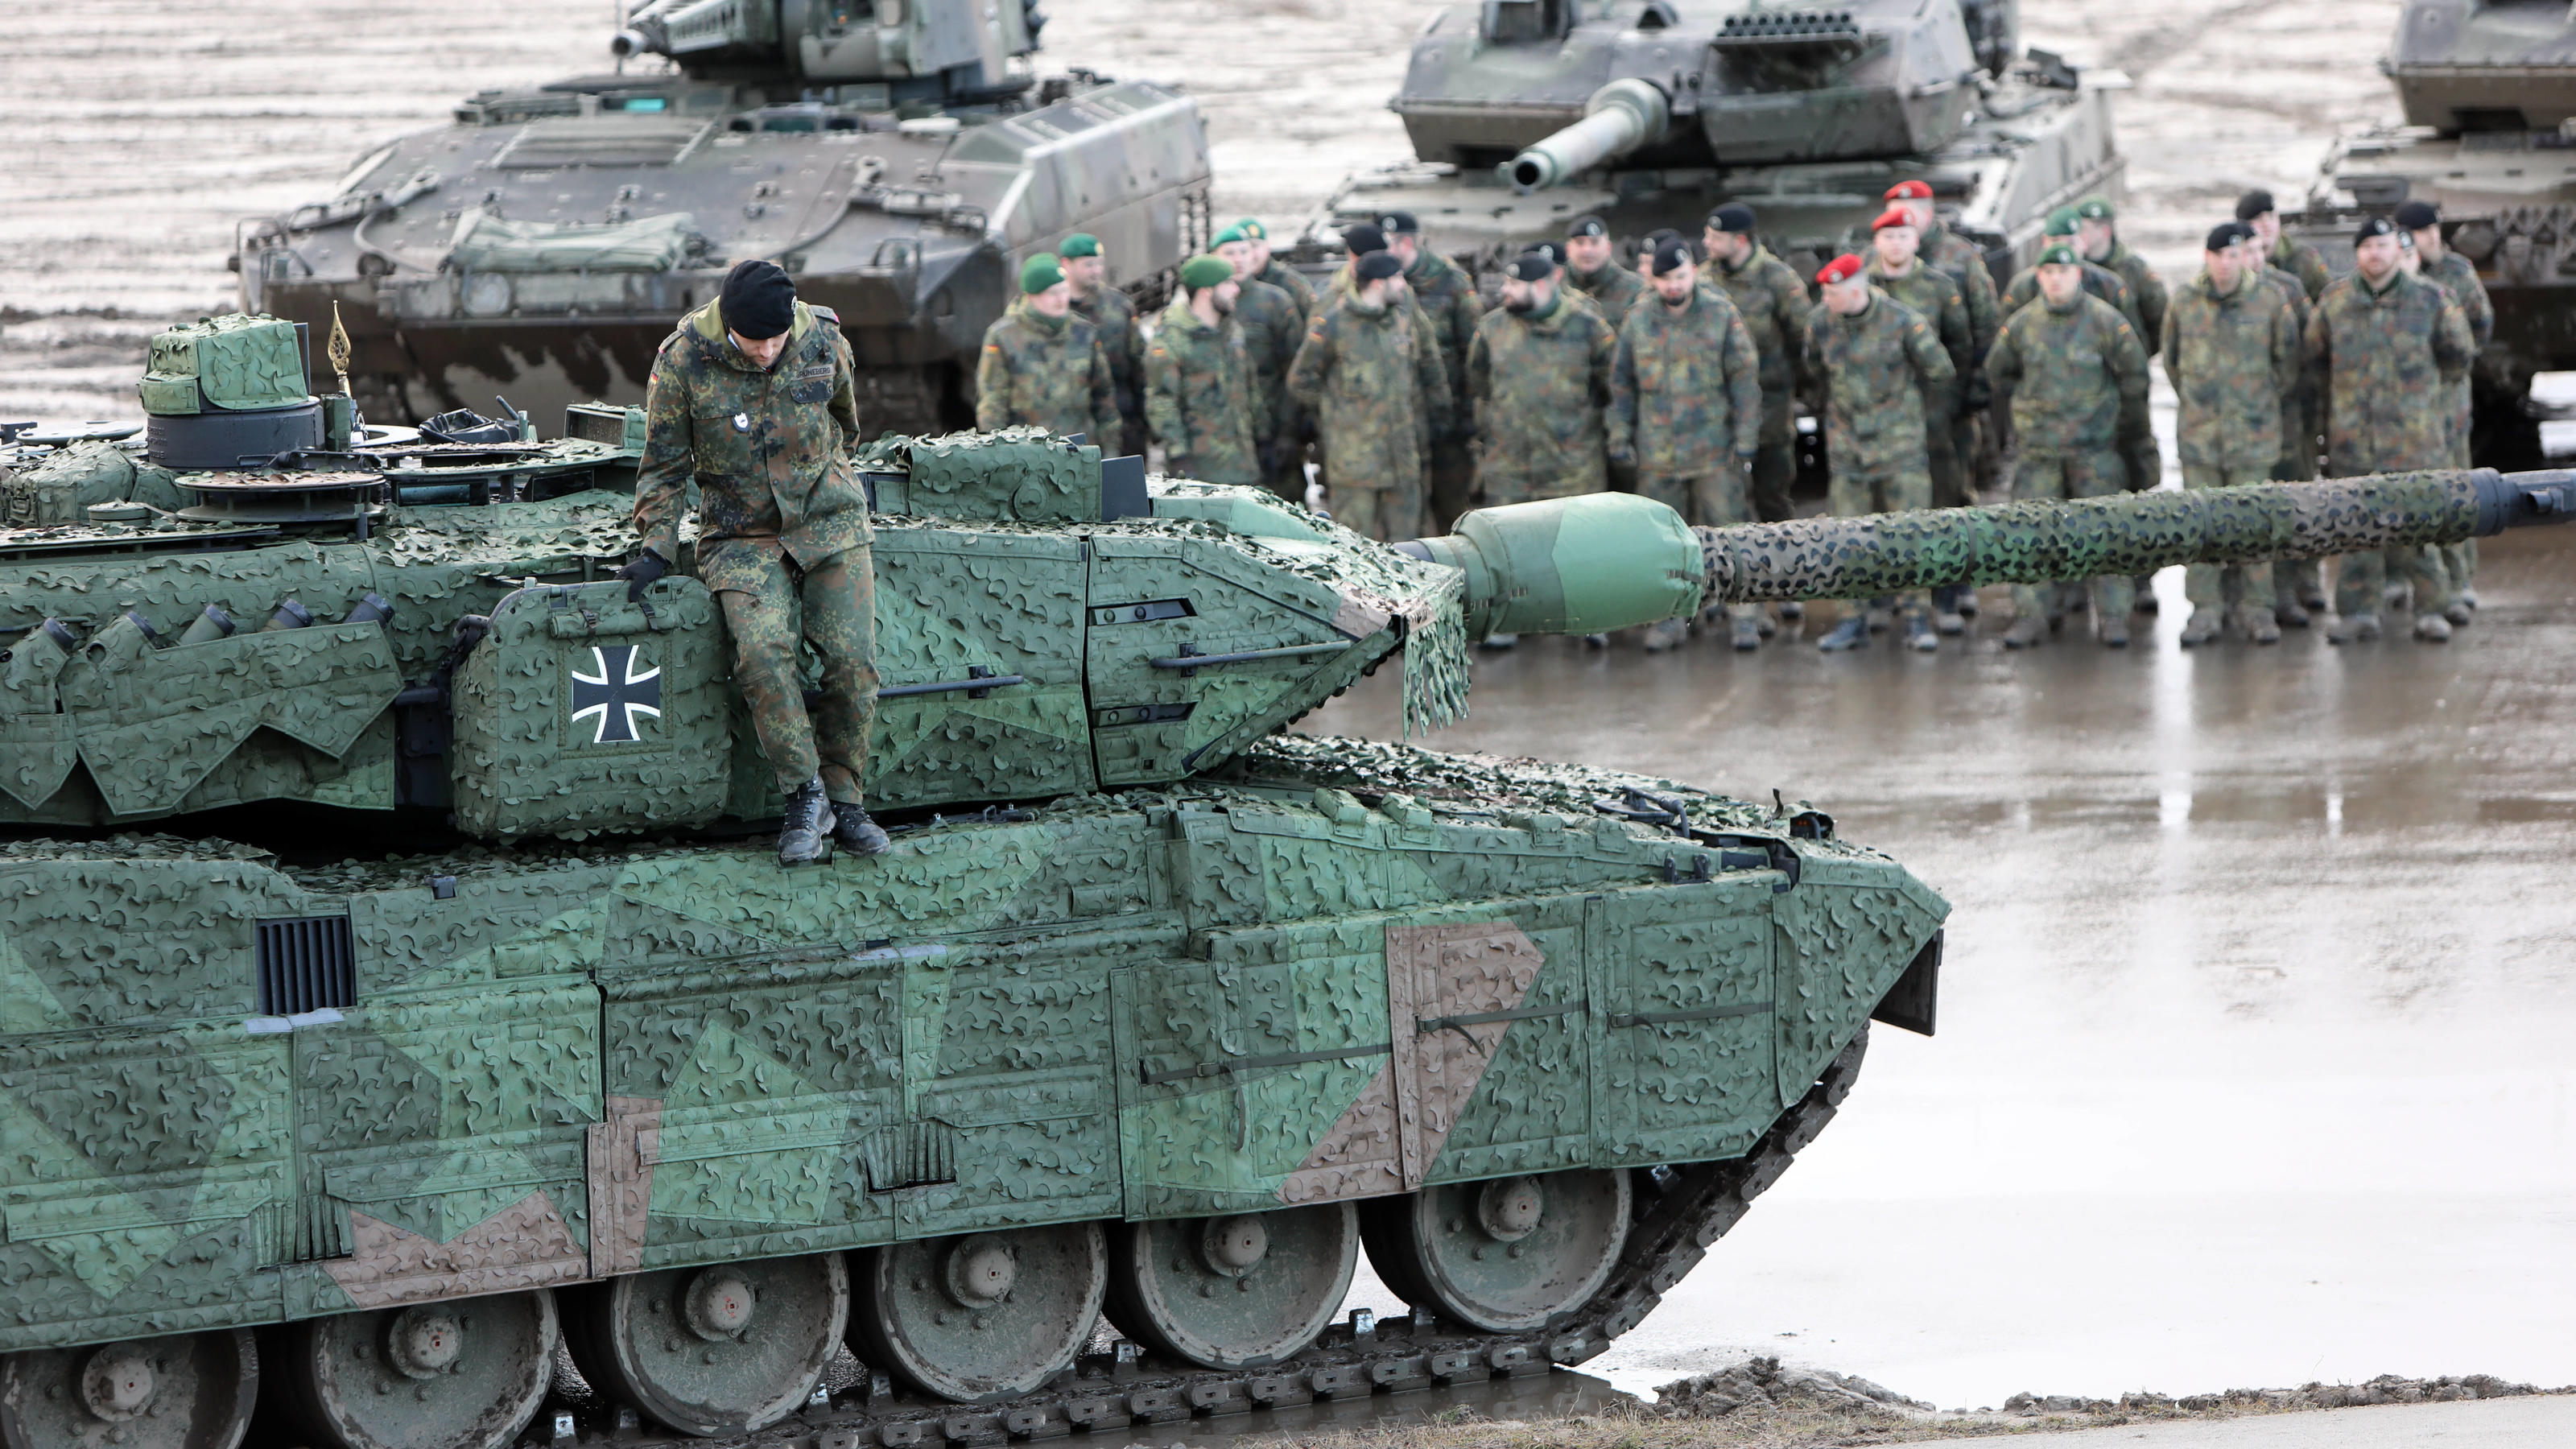 Vorne: Kampfpanzer Leopard 2A7v der Bundeswehr auf dem Truppenübungsplatz Munster. Die Panzerlehrbrigade 9 hat im Rahmen einer feierlichen Übergabe durch die Bundesministerin der Verteidigung am 07.02.2022 fünf Panzer für die Brigade erhalten. Dienst